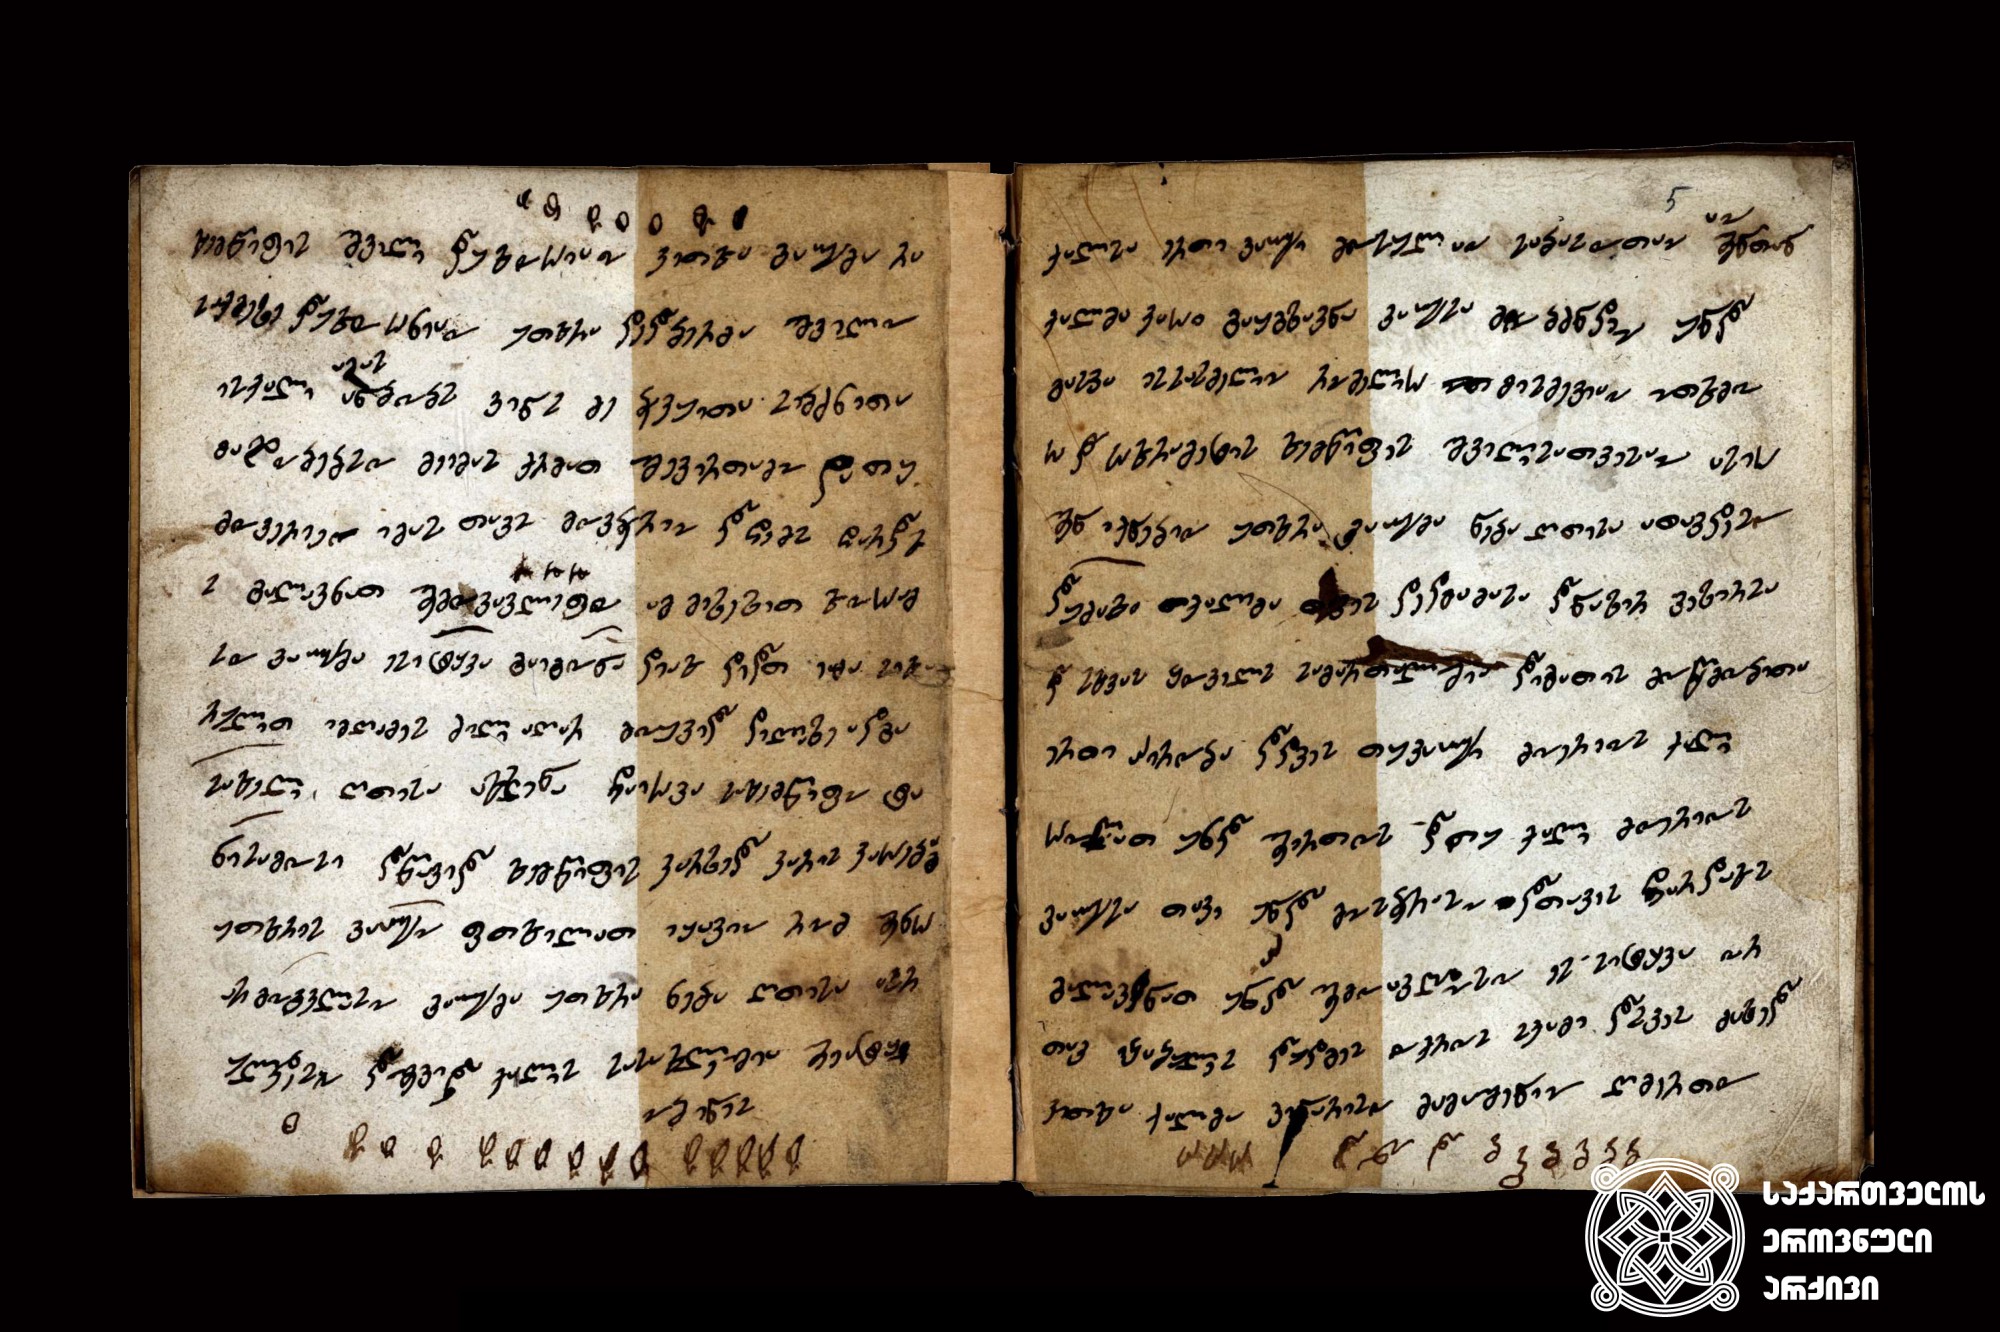 მხედრული, დედაბრული ხელი. ქალვაჟიანი, XIX საუკუნის პირველი ნახევარი. <br>
Mkhedruli script, dedabruli writing. Qalvazhiani, first half of the 19th century.